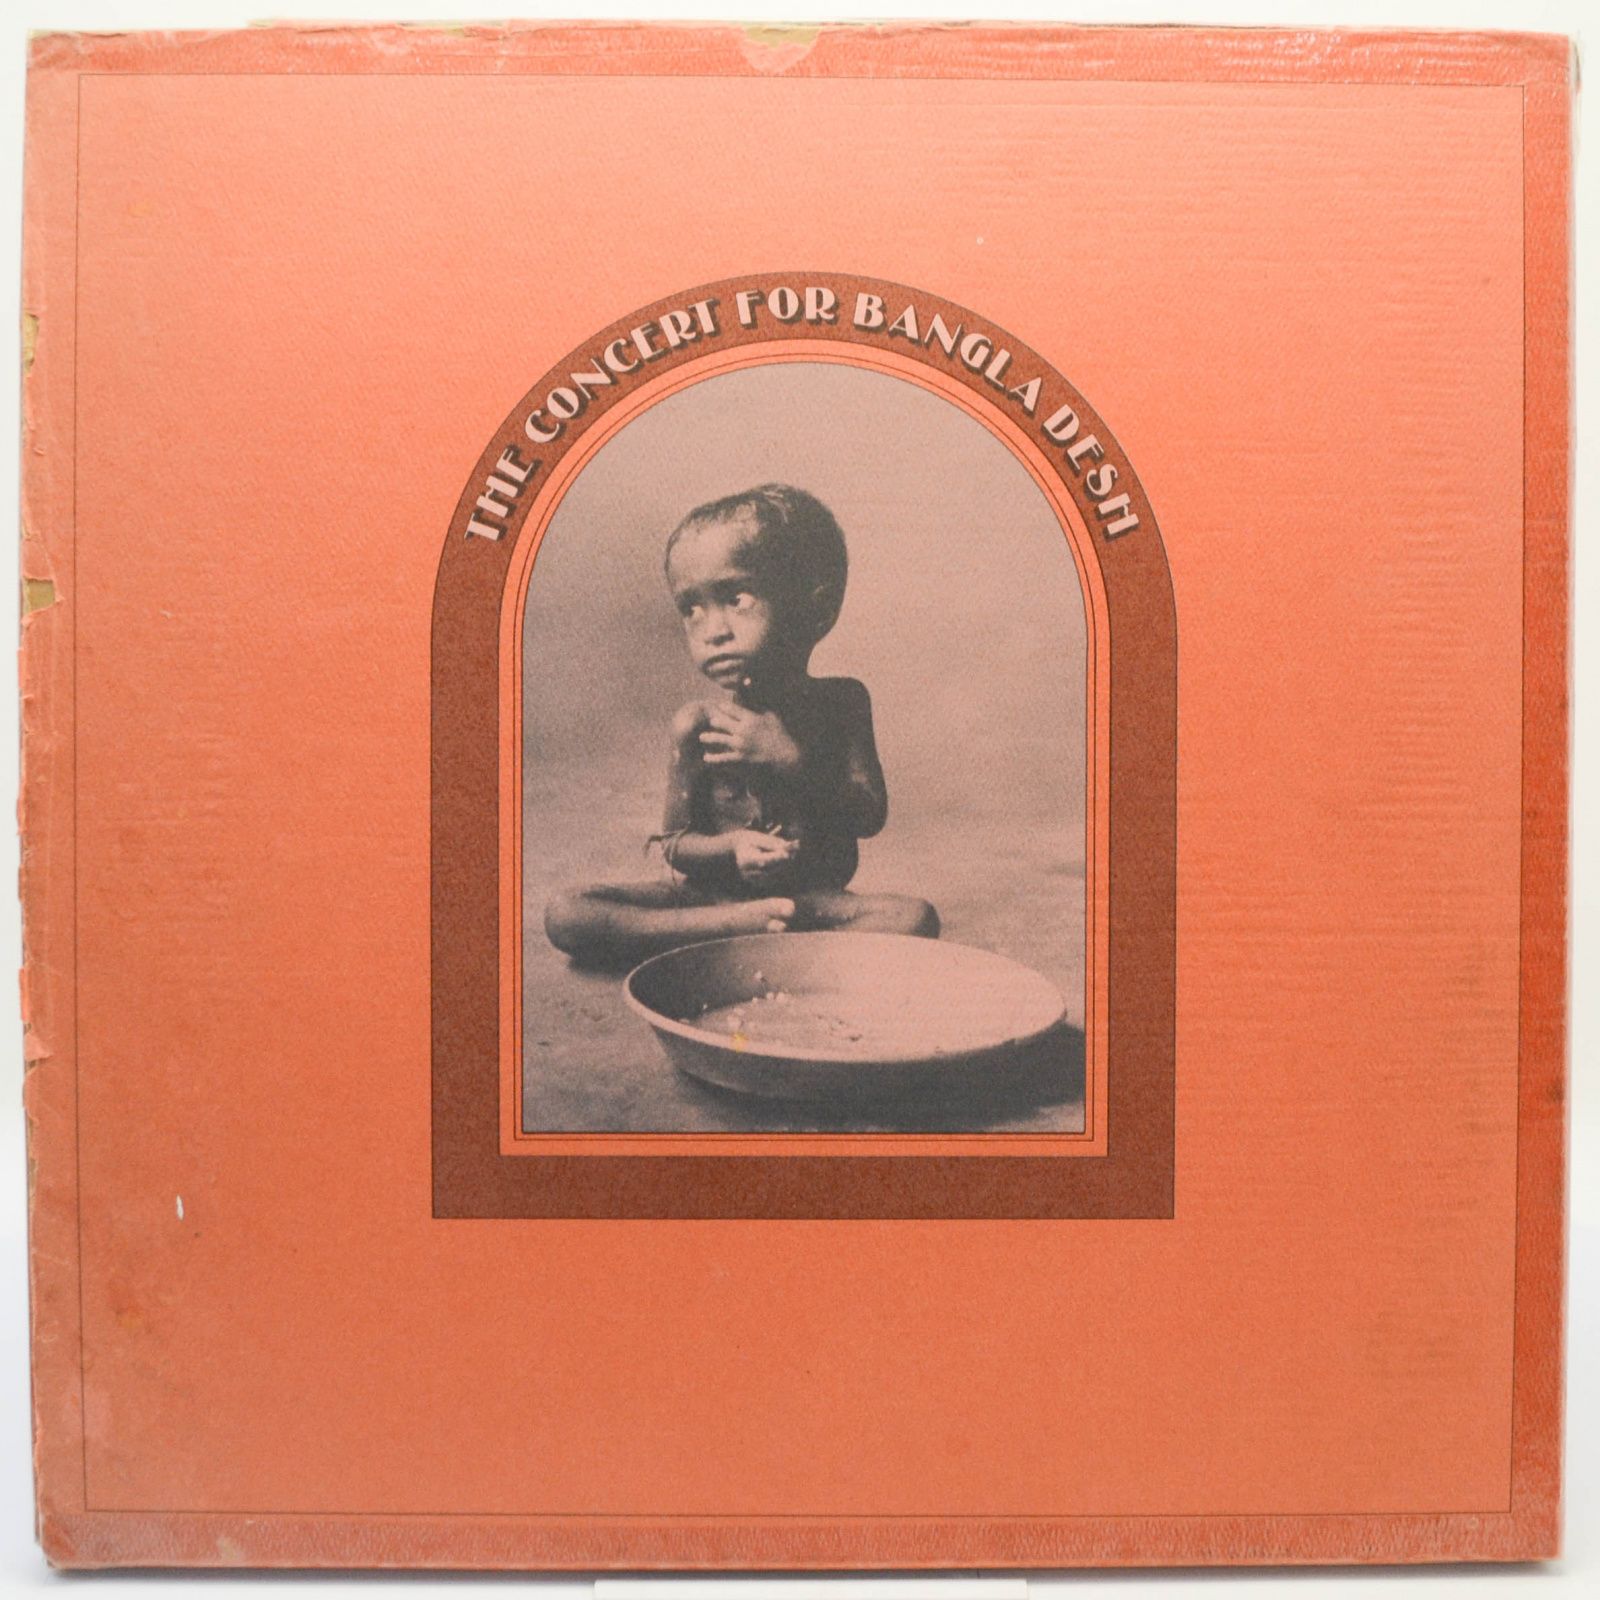 Various — The Concert For Bangla Desh (1-st, USA, Box), 1971